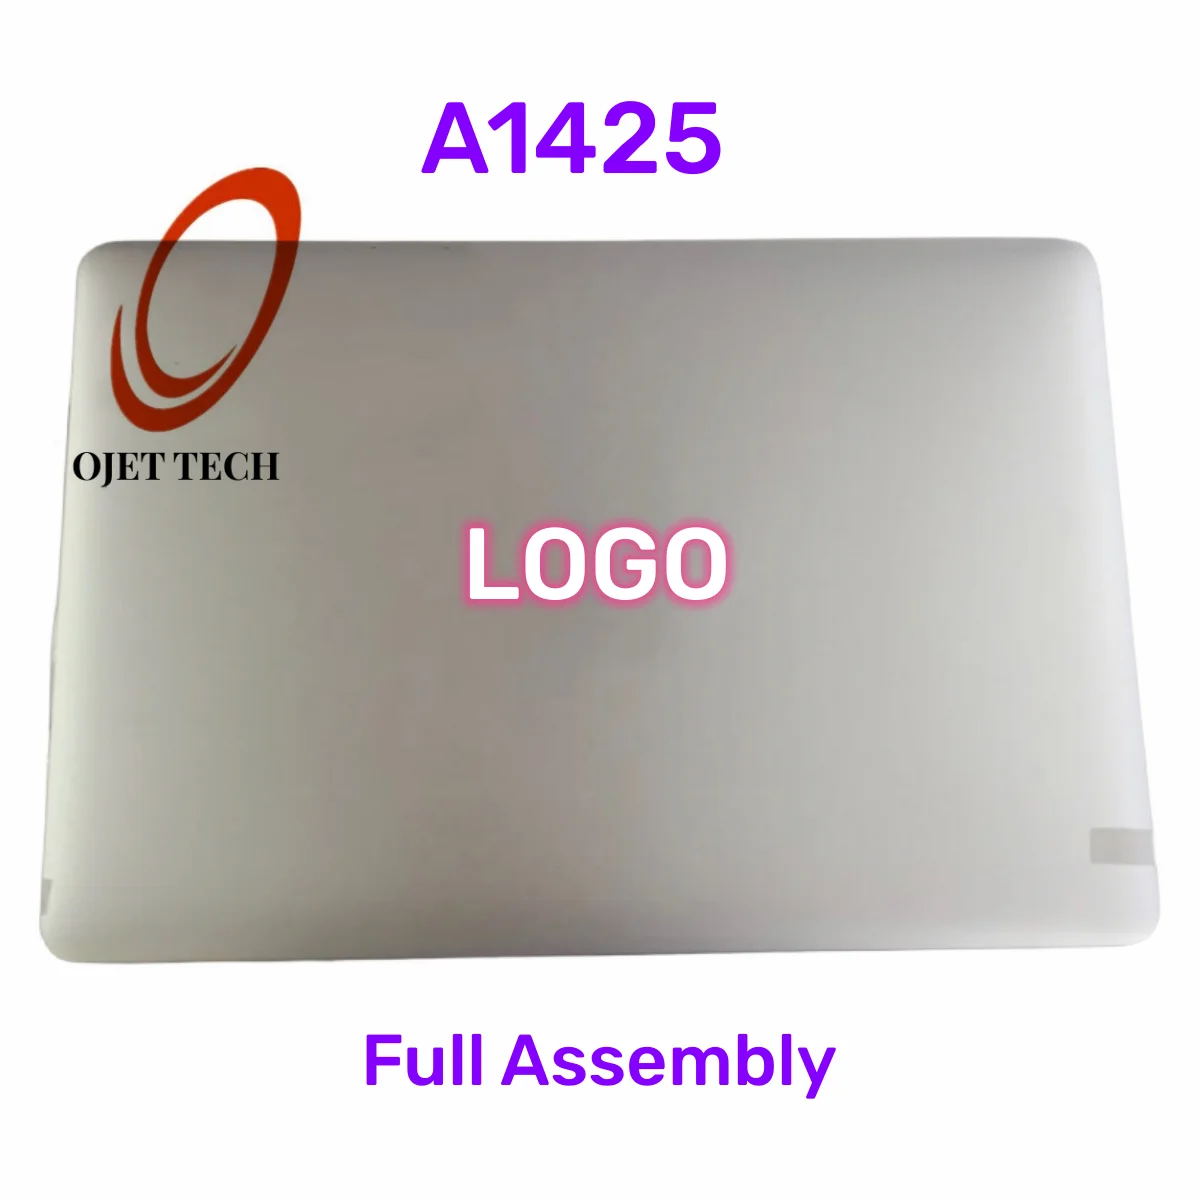 MacBook Pro Retina A1425 ЖК-дисплей с экраном и Полная сборка 661-7014 Для MD212 MD213 ME662 Конца 2012-начала 2013 EMC 2557 2672